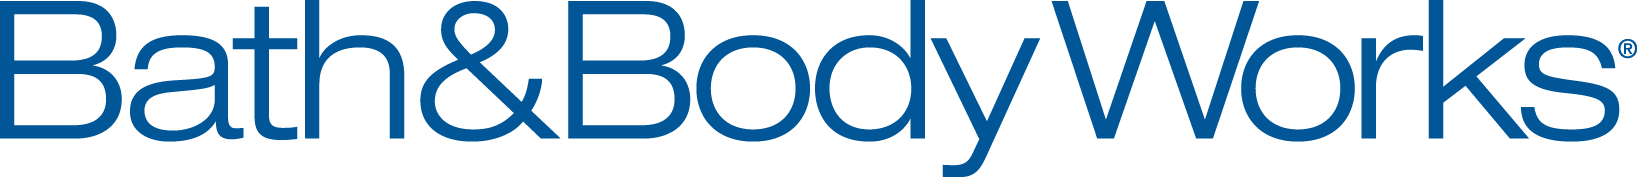 BBW_Logo (003).png